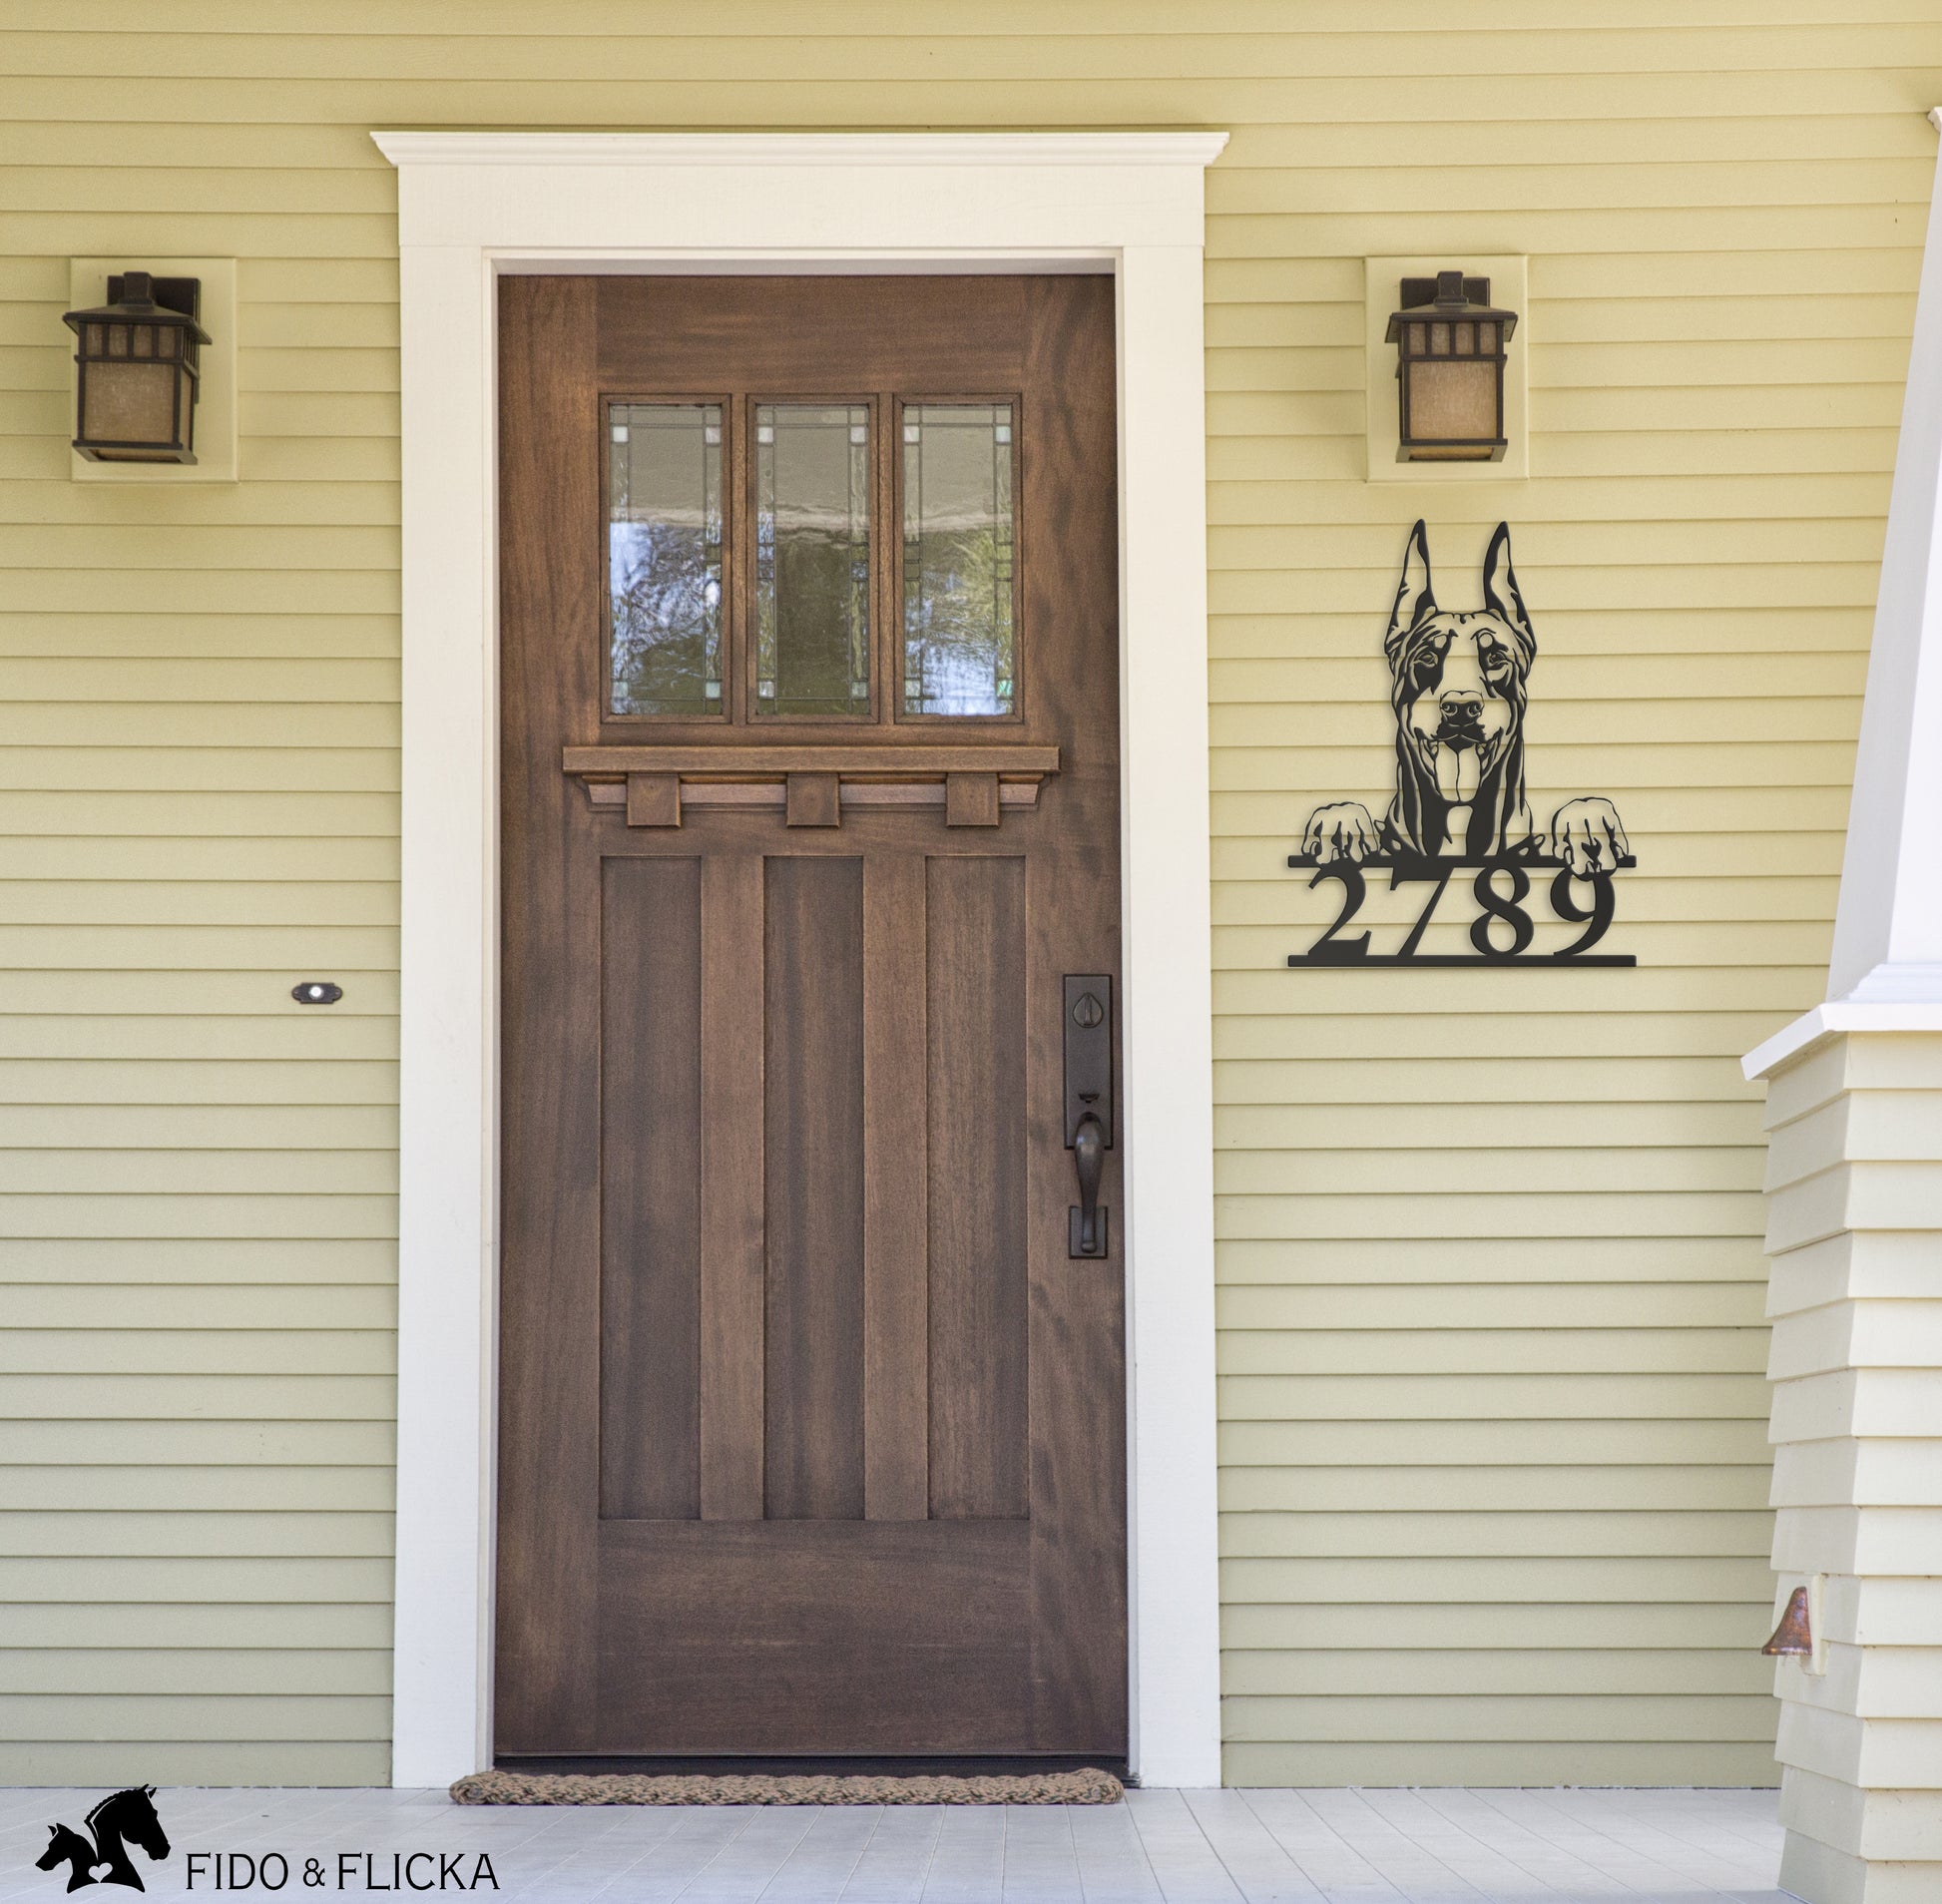 house number with doberman front door